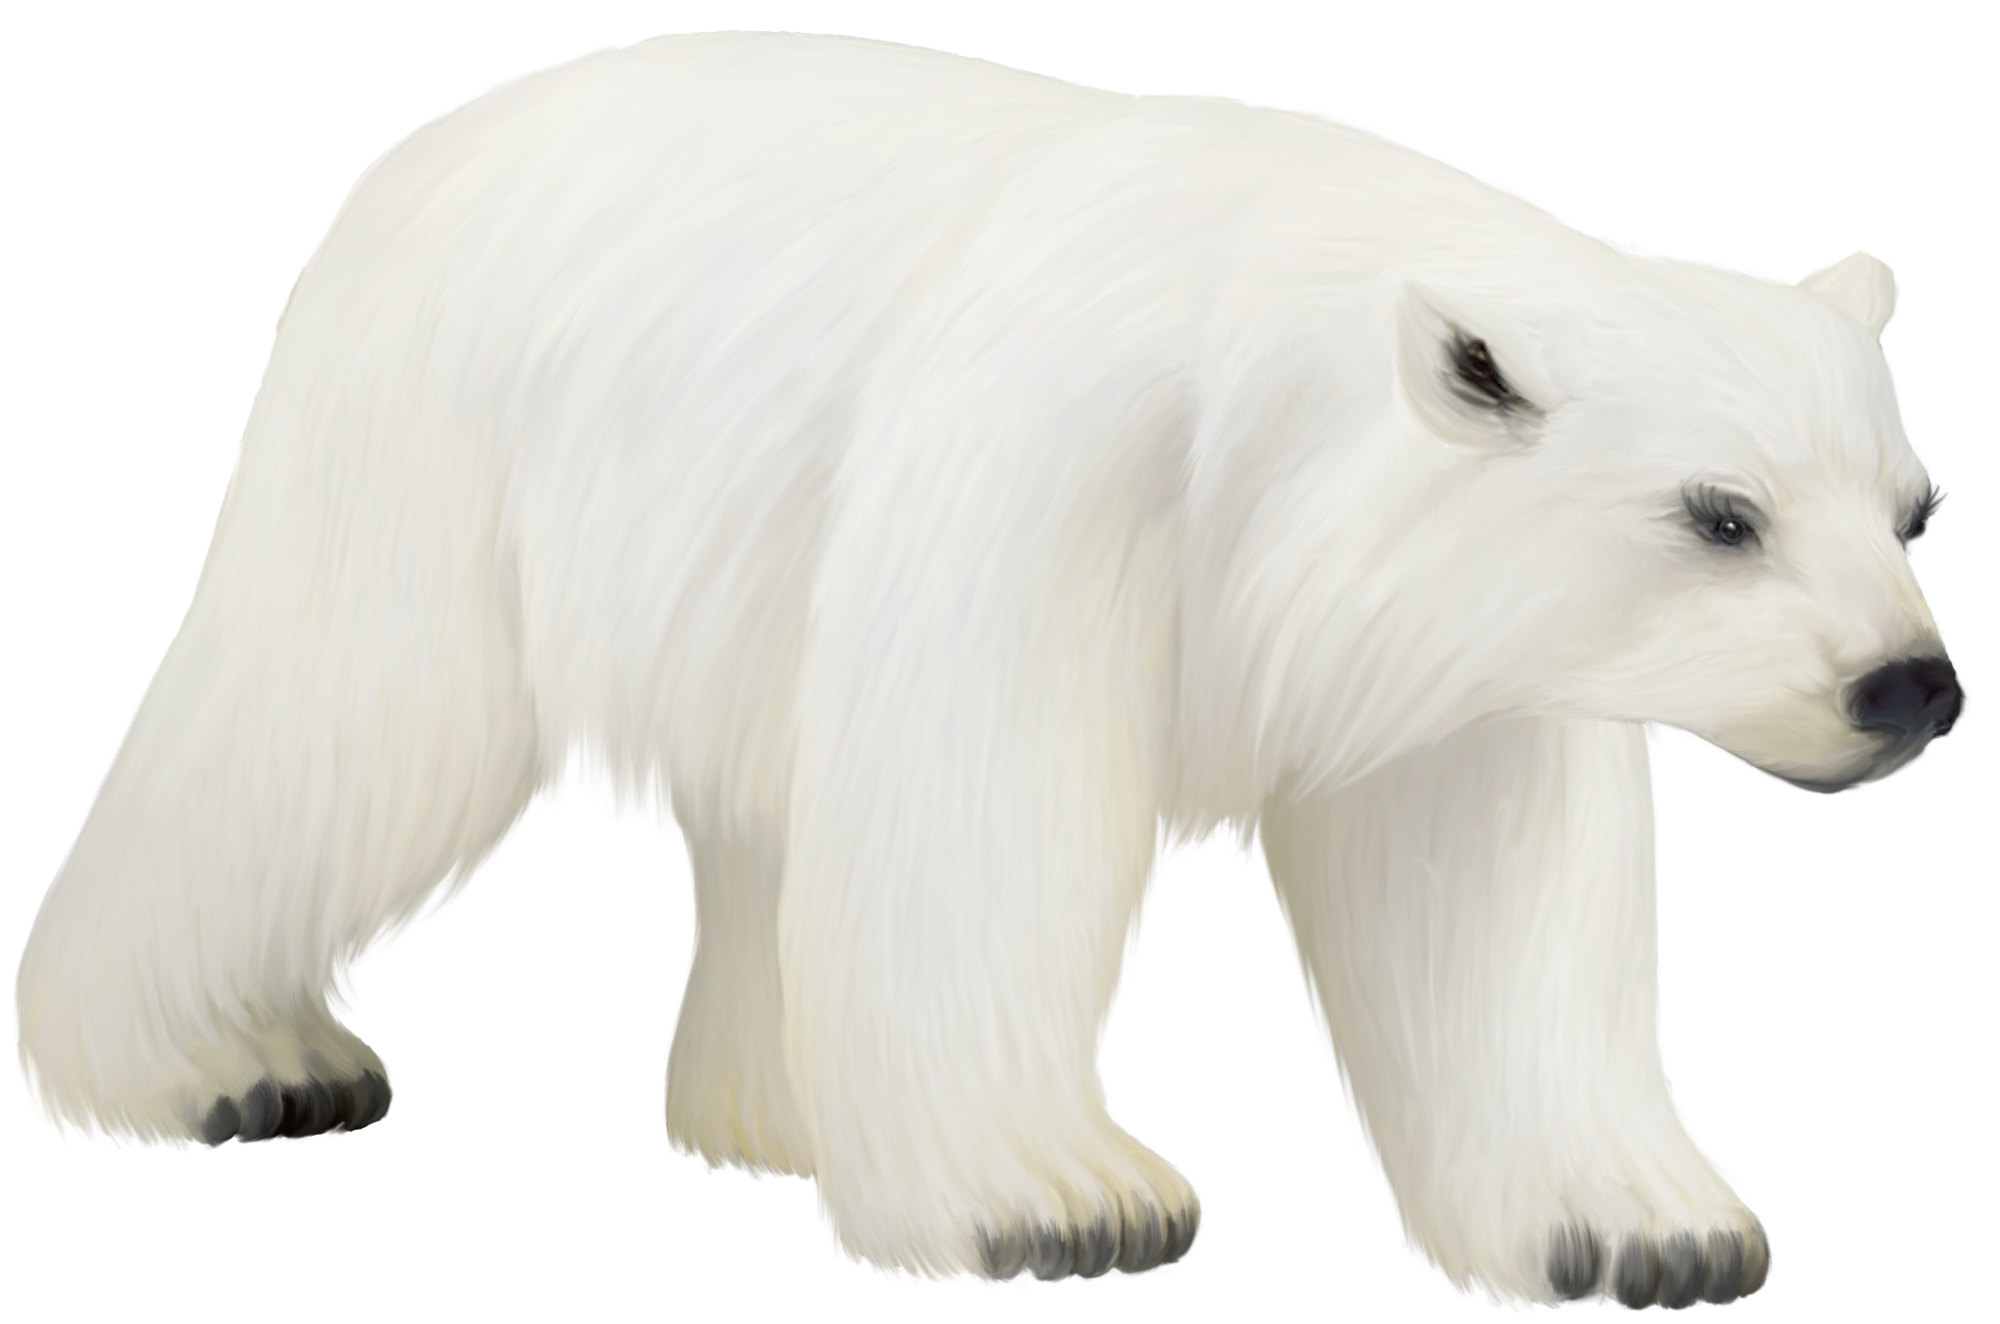 Niedźwiedź polarny zakrywający twarz